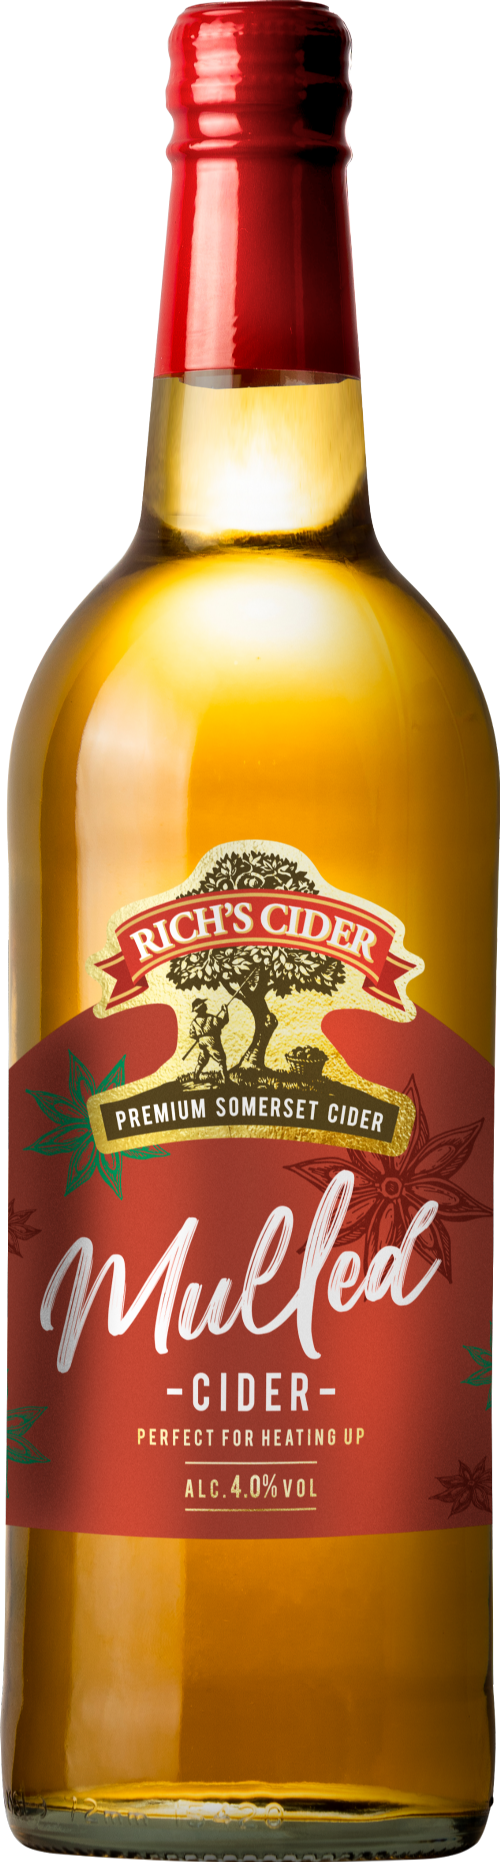 RICH'S CIDER Mulled Cider 4% ABV 75cl